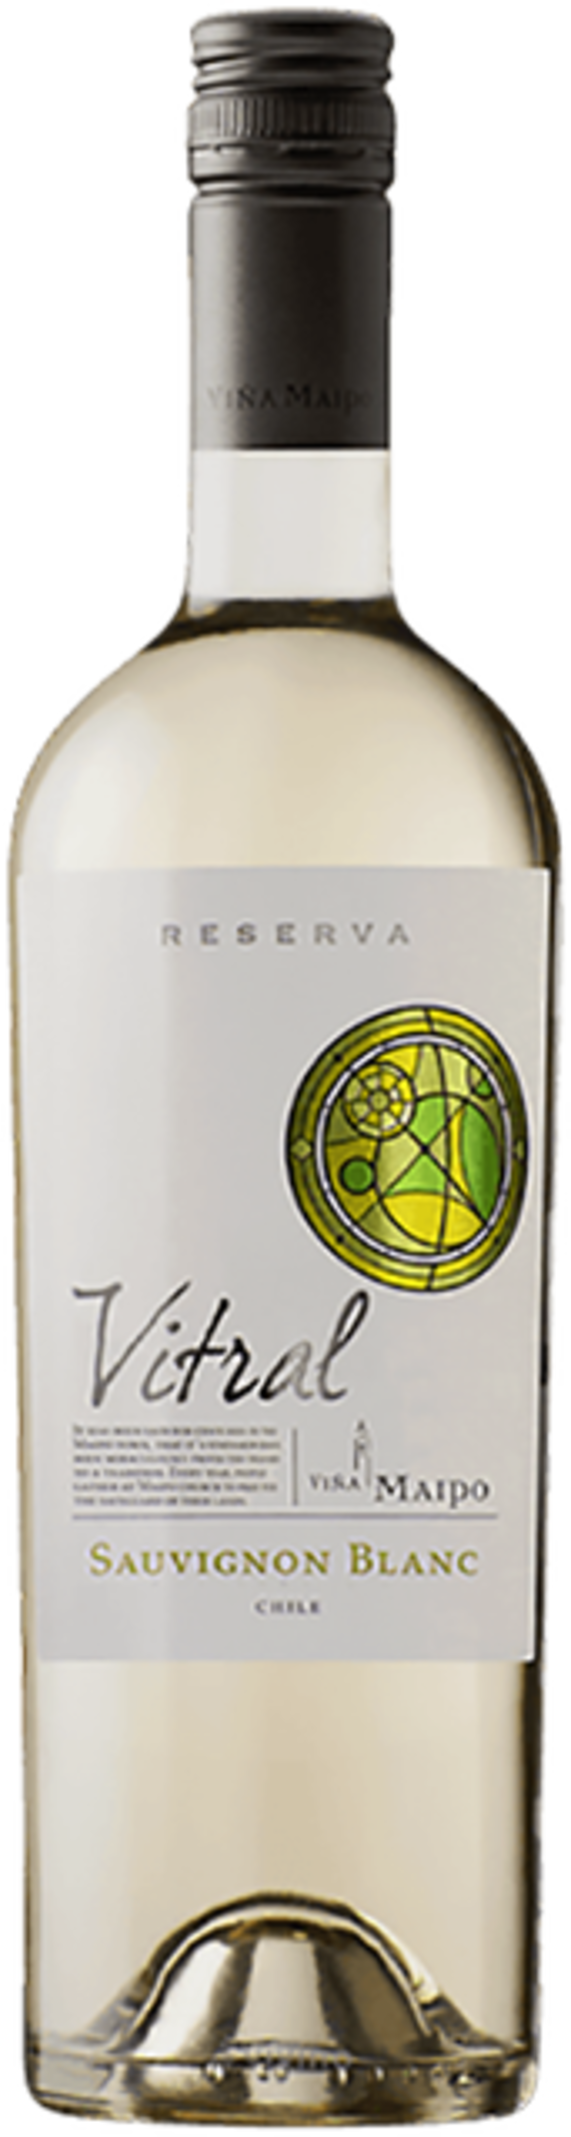 Rượu vang trắng Chile, Vina Maipo, Vitral Reserva Sauvignon Blanc